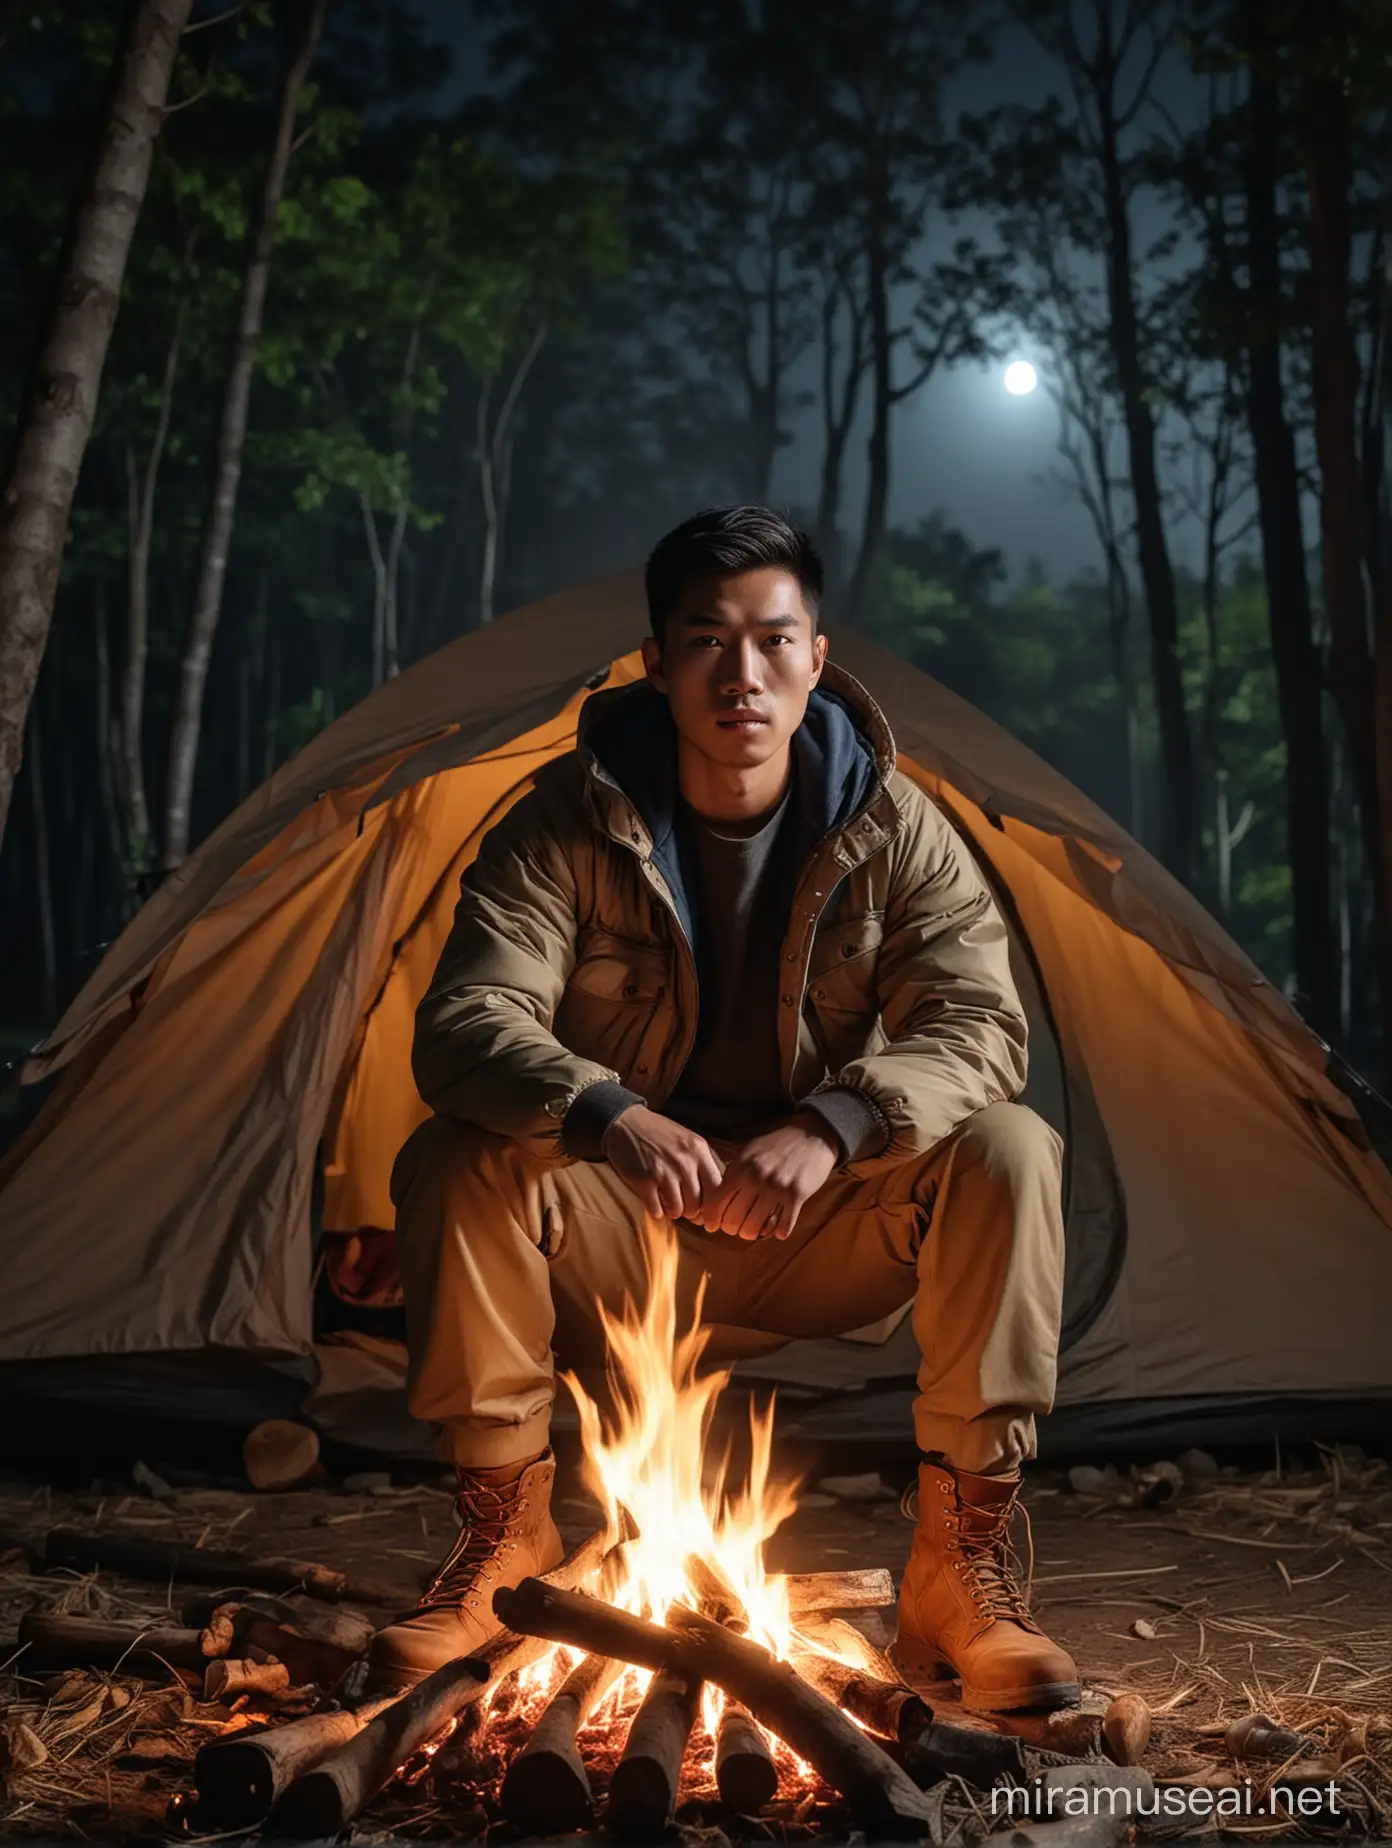 Dynamic Asian Man in Mountain Jacket by Night Bonfire